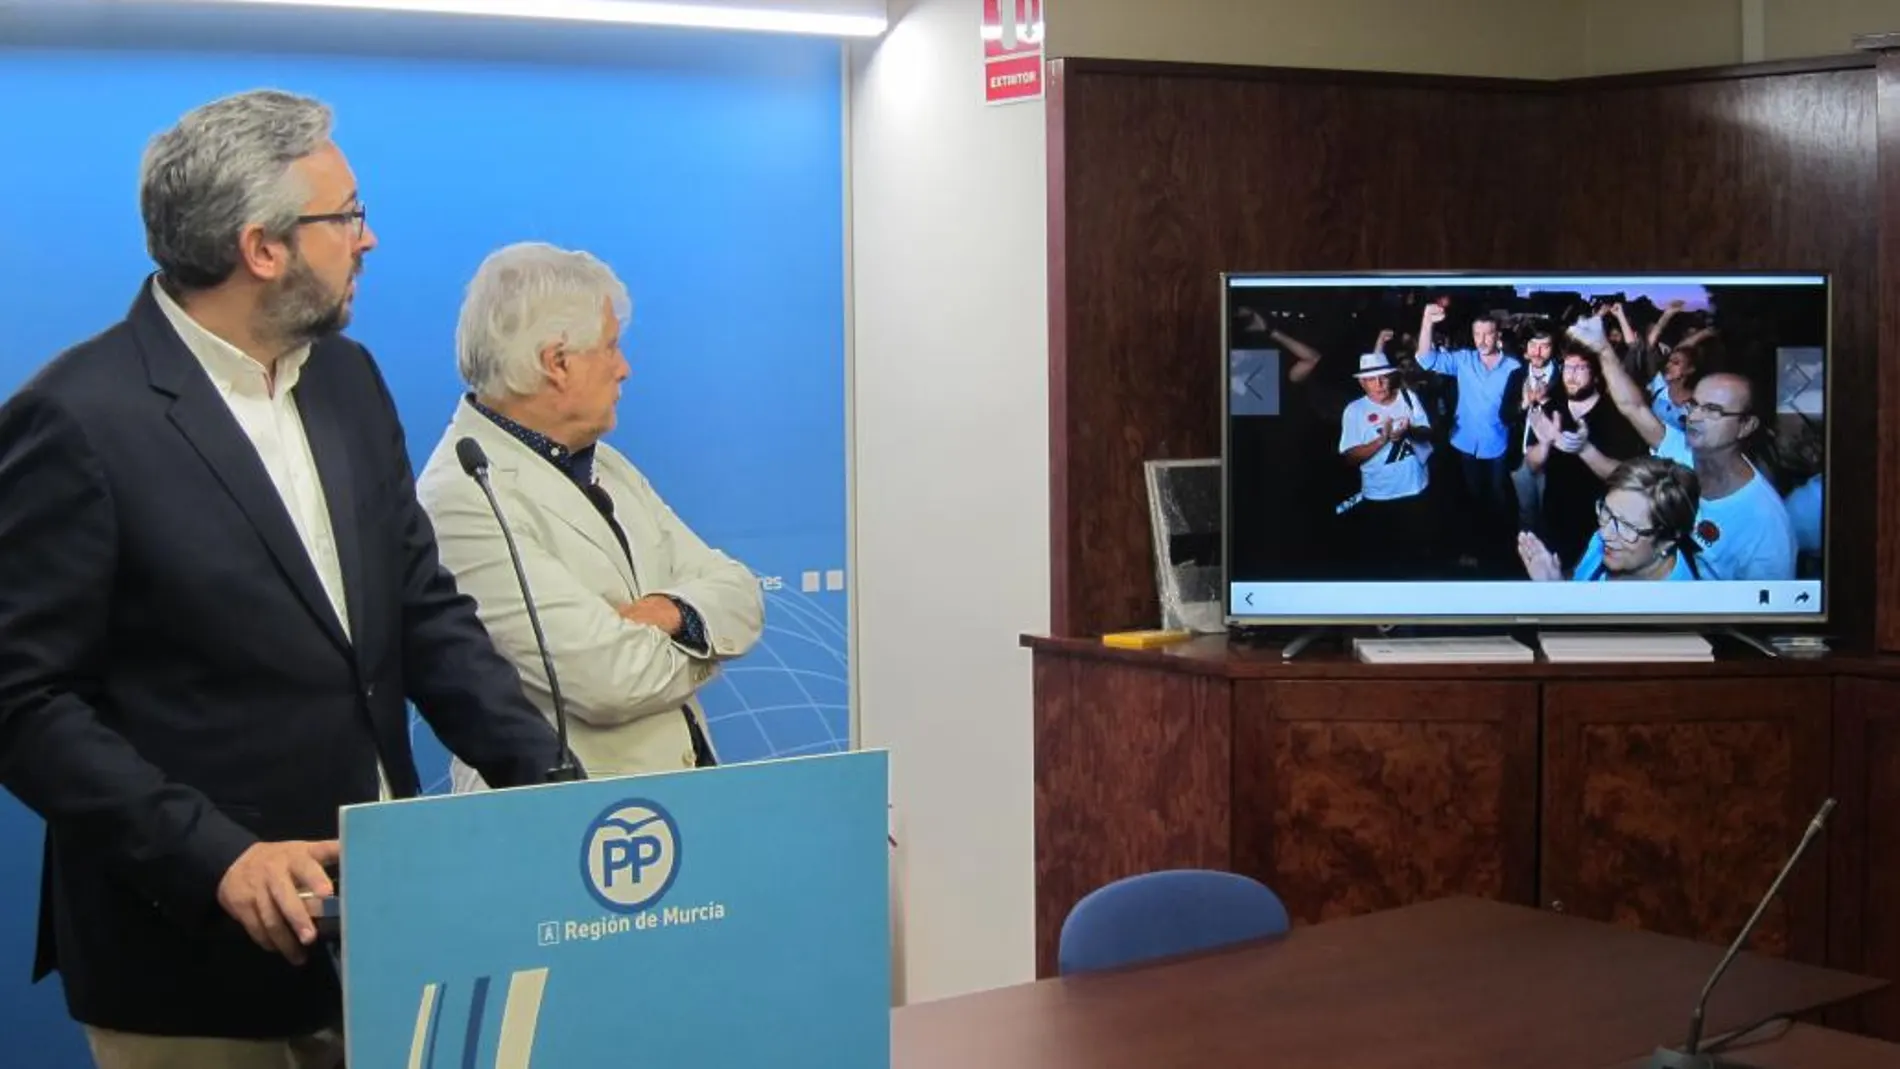 El portavoz del PPRM muestra una fotografía en la que aparece el líder de Podemos